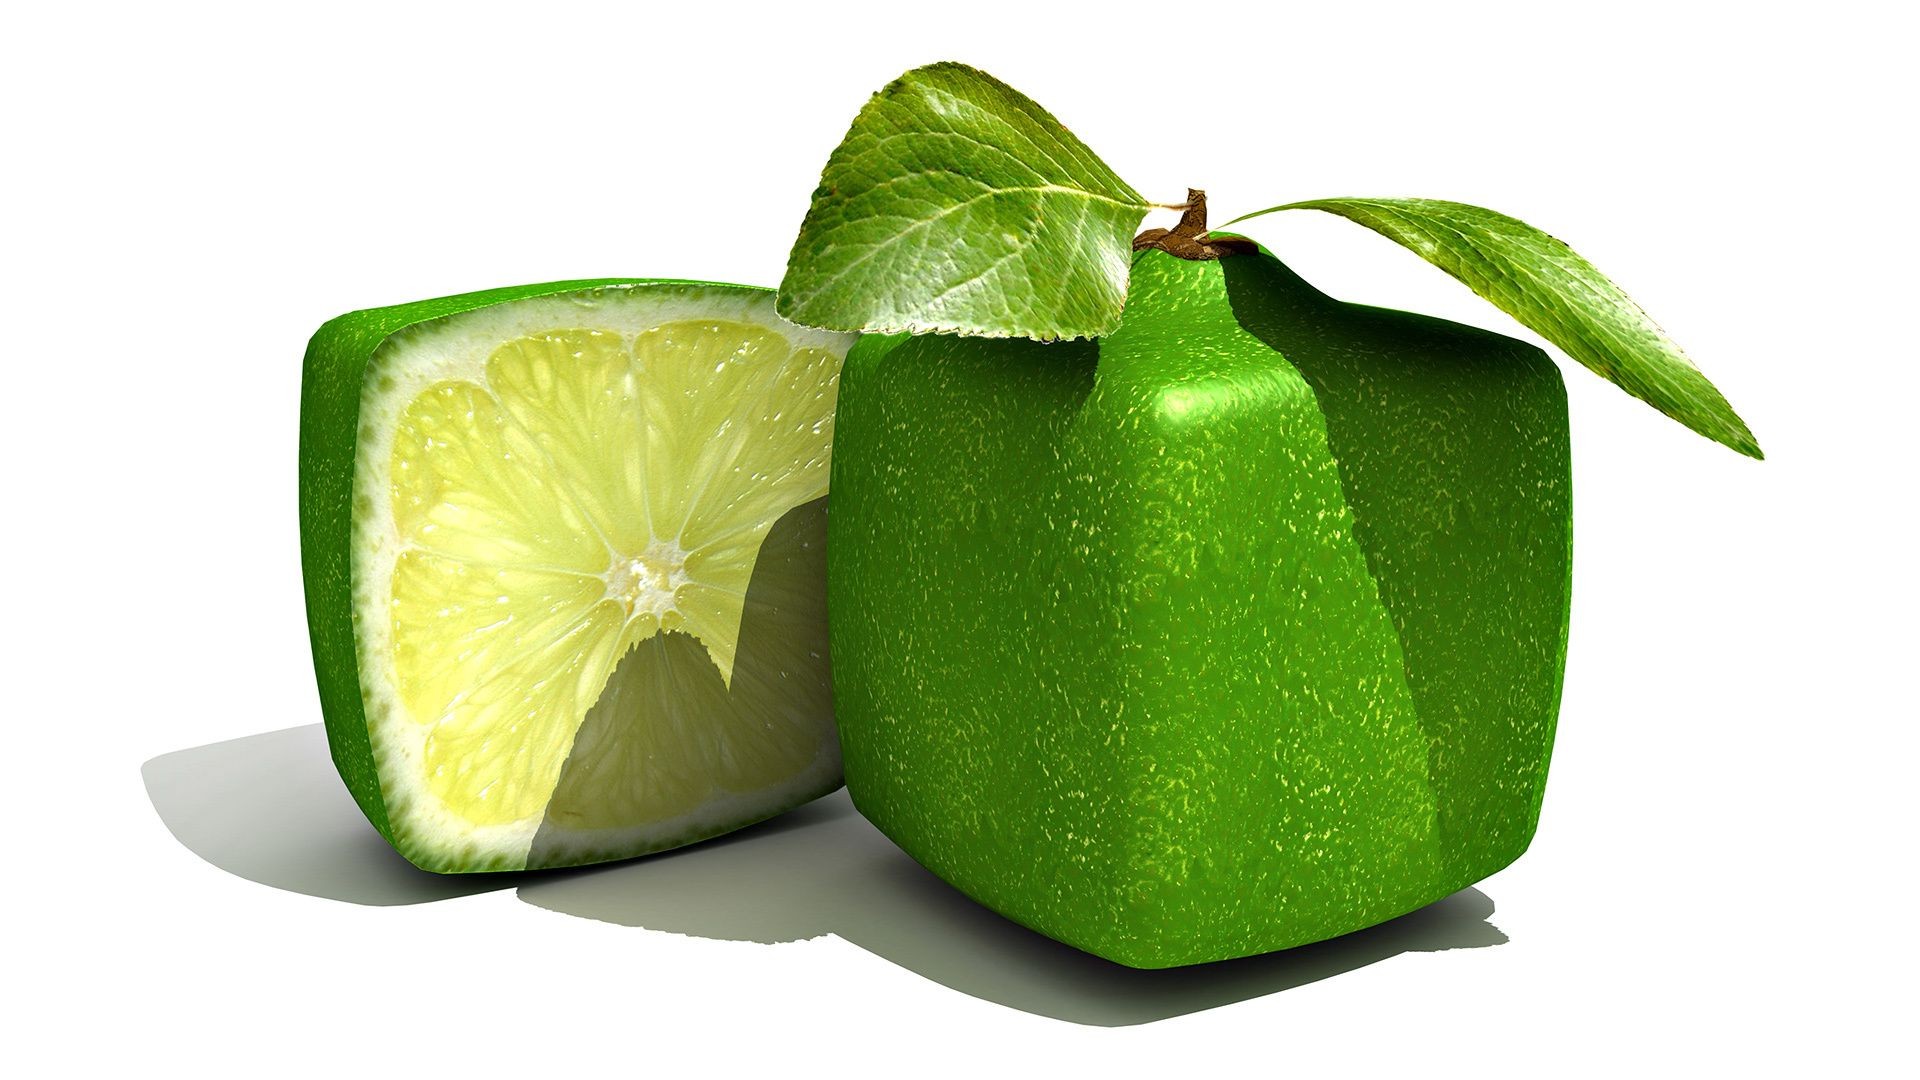 фрукты сочные сок лист еда здоровья тропический кондитерское изделие цитрусовые здоровый изолированные свежесть питание половина